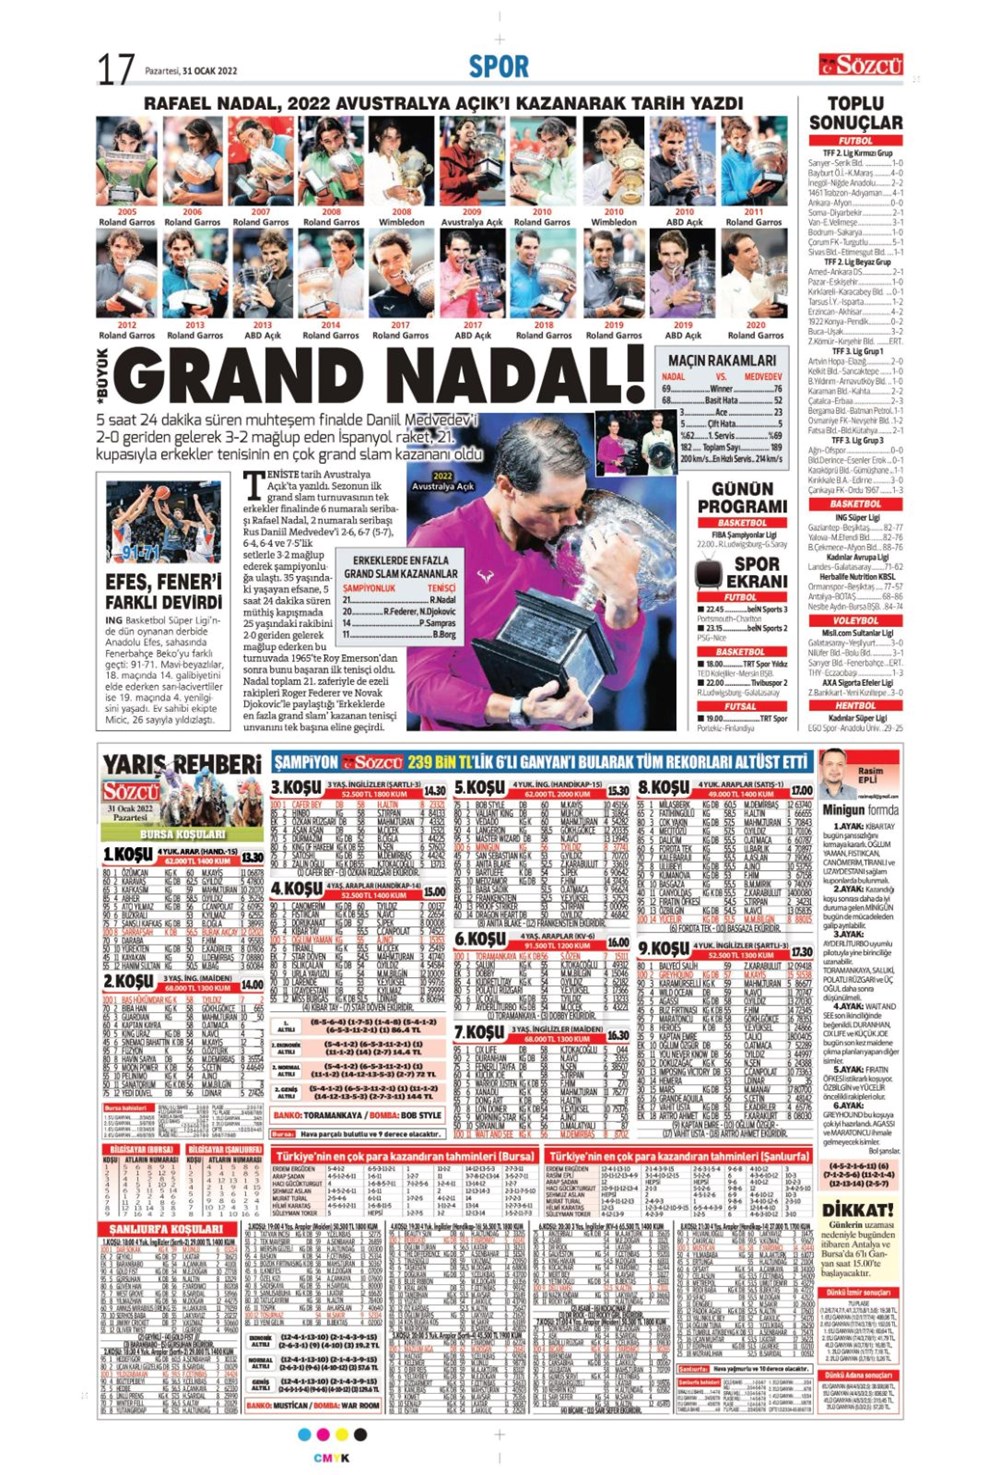 Günün spor manşetleri (31 Ocak 2022) - 11